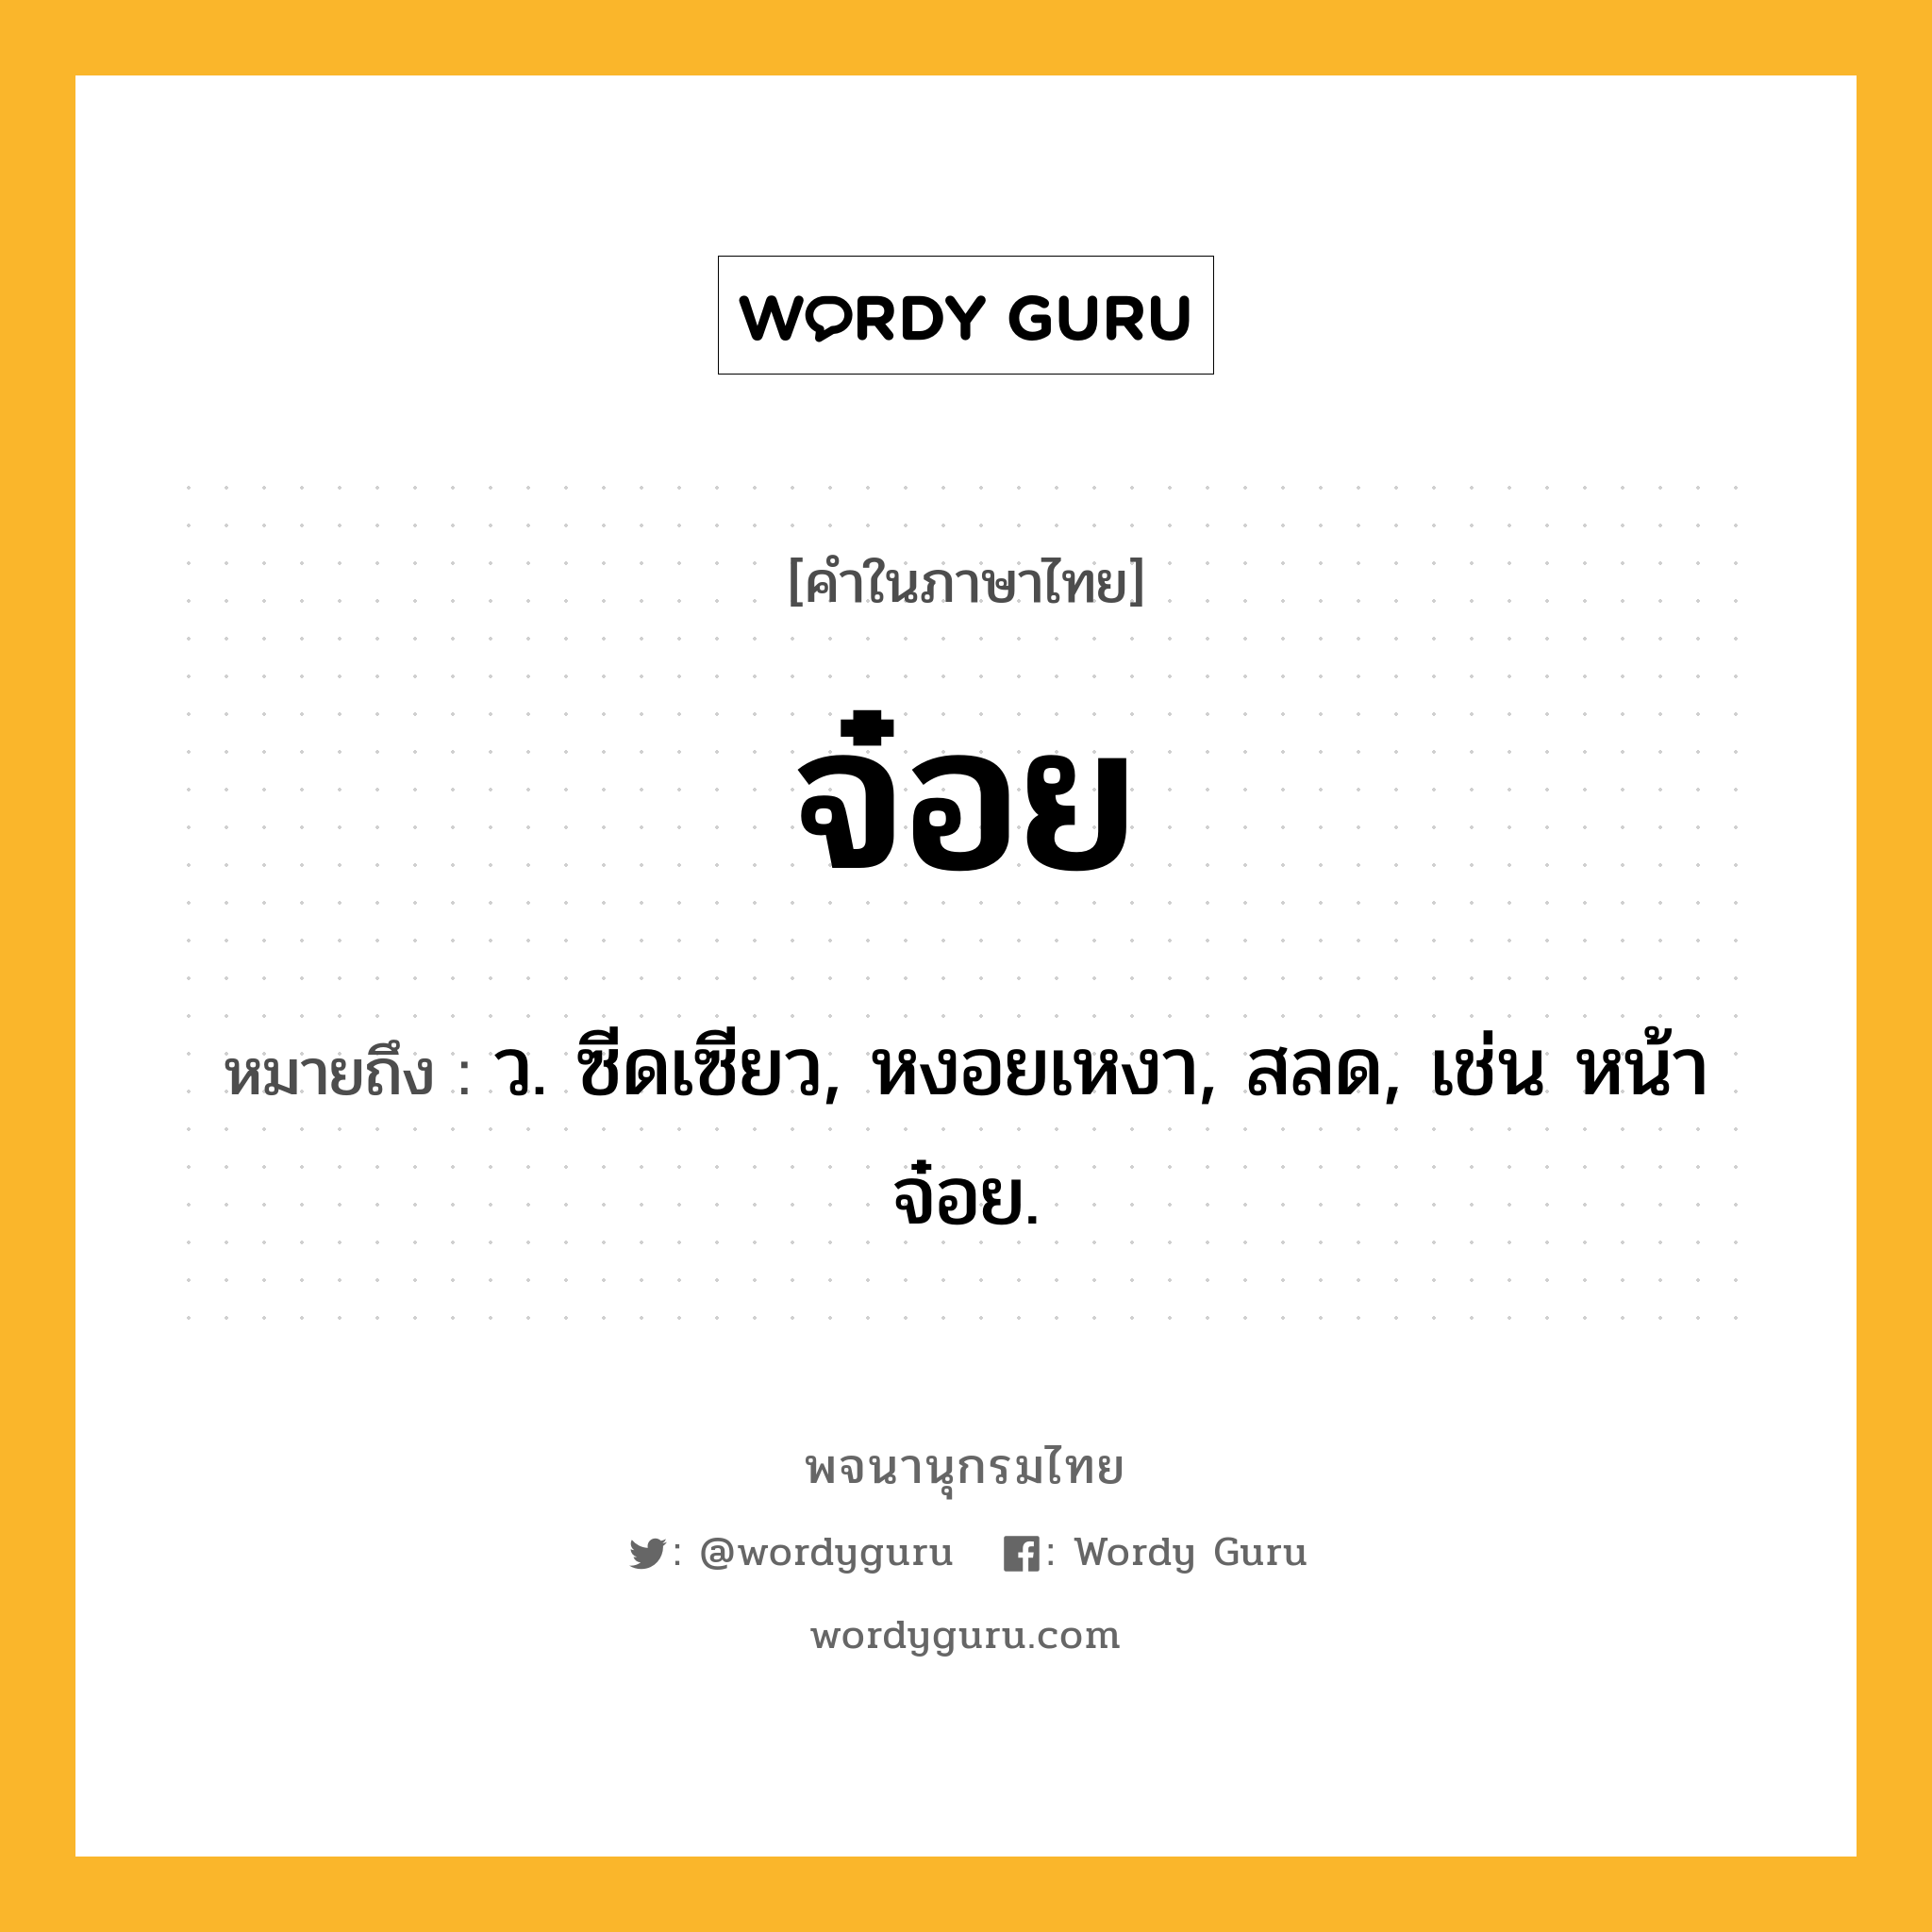 จ๋อย หมายถึงอะไร?, คำในภาษาไทย จ๋อย หมายถึง ว. ซีดเซียว, หงอยเหงา, สลด, เช่น หน้าจ๋อย.